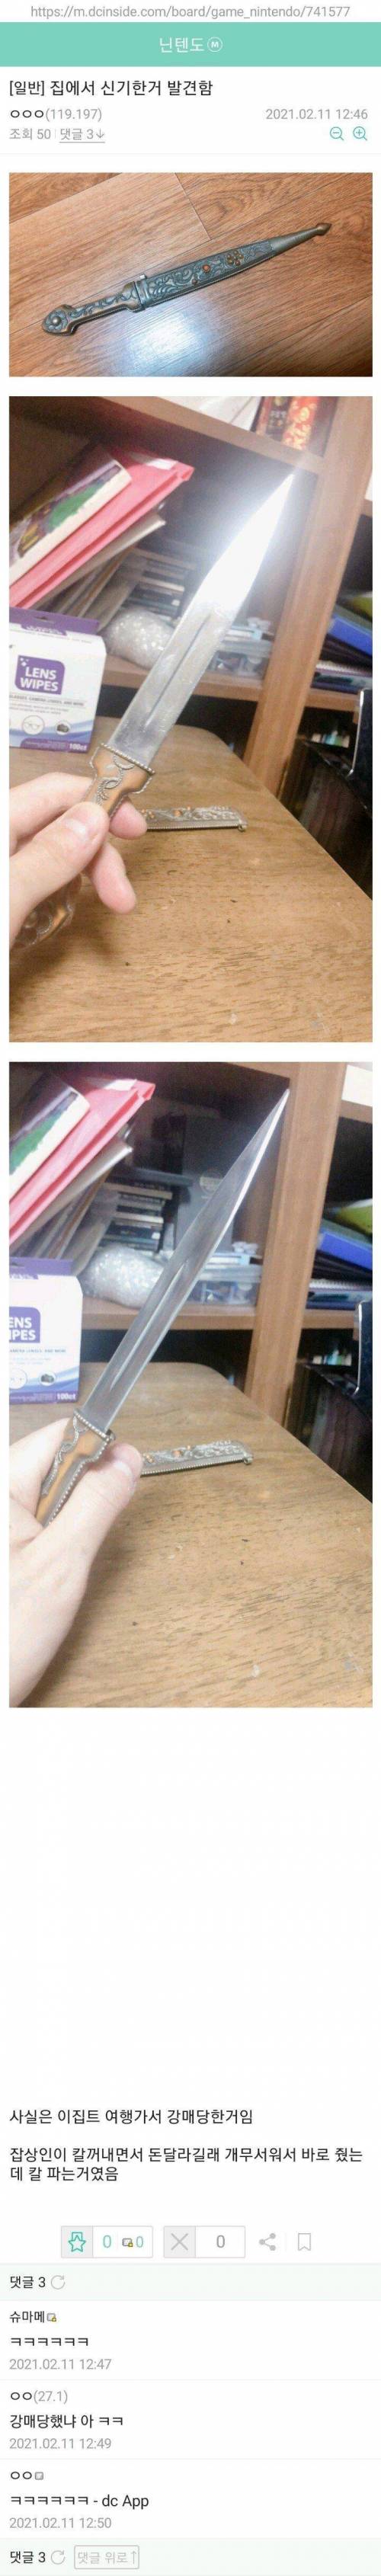 외국인에게 효과적으로 칼 파는 법.jpg